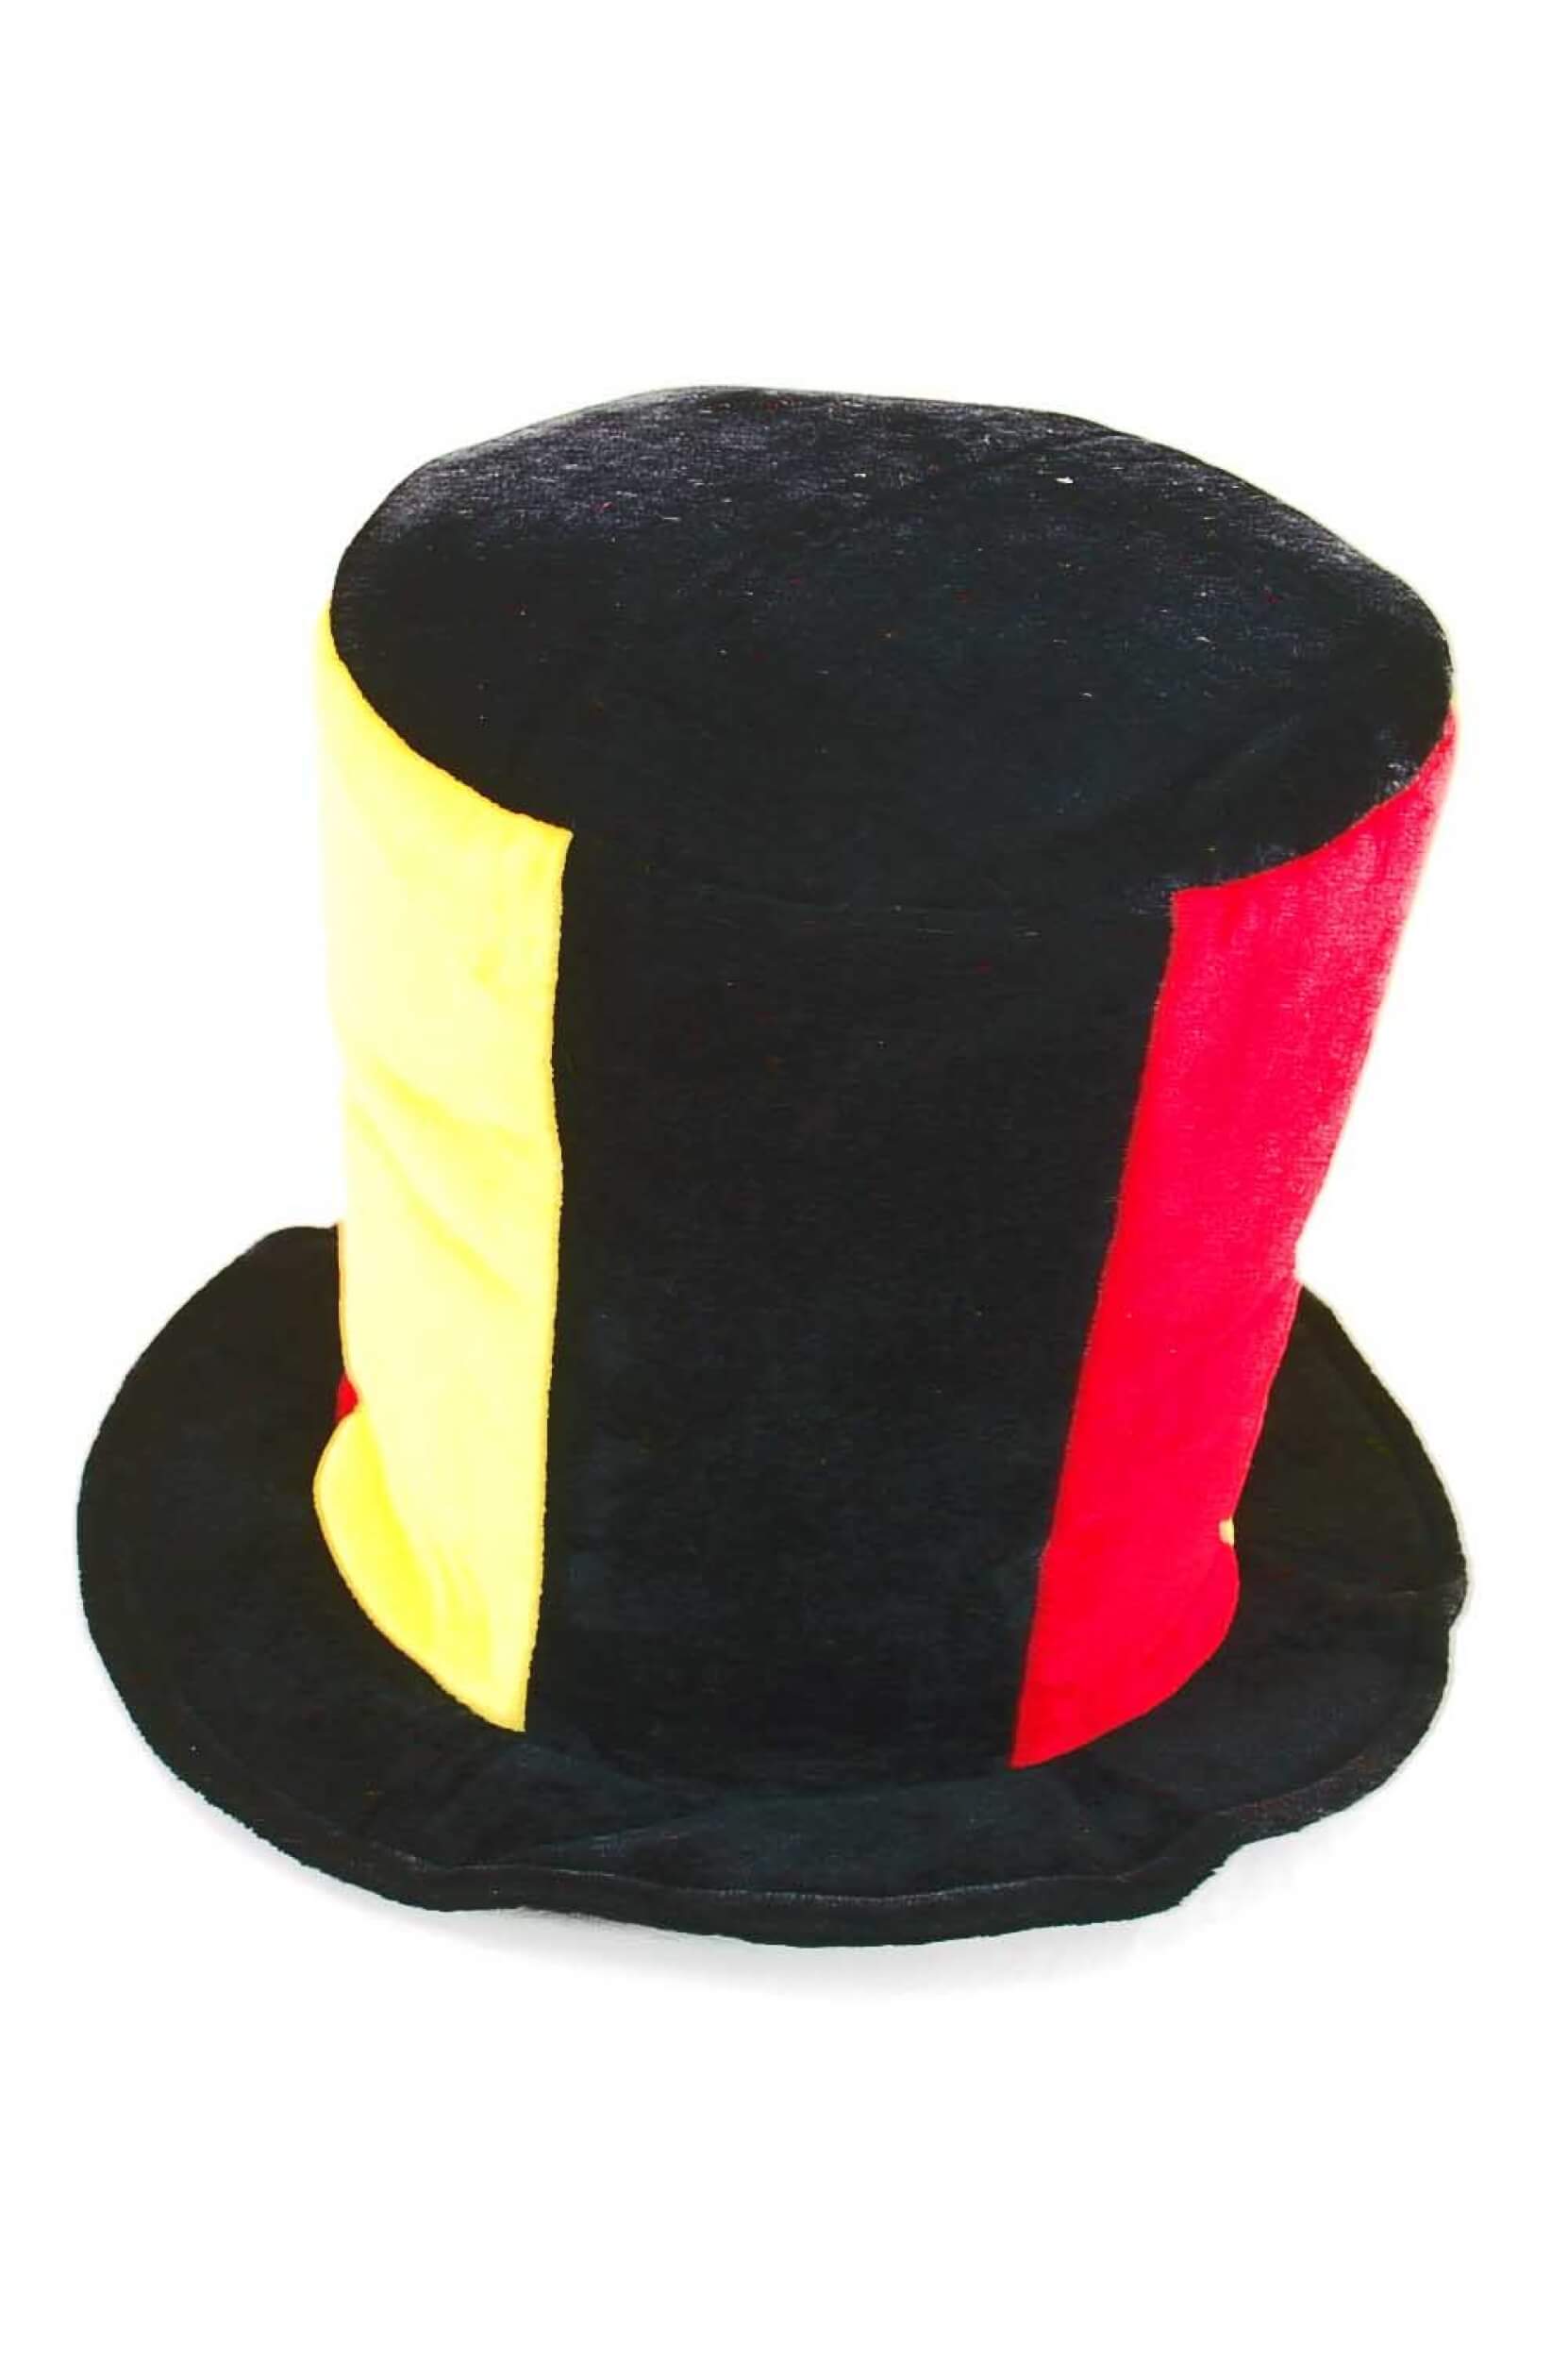 Zylinder Hut Deutschland schwarz rot gelber